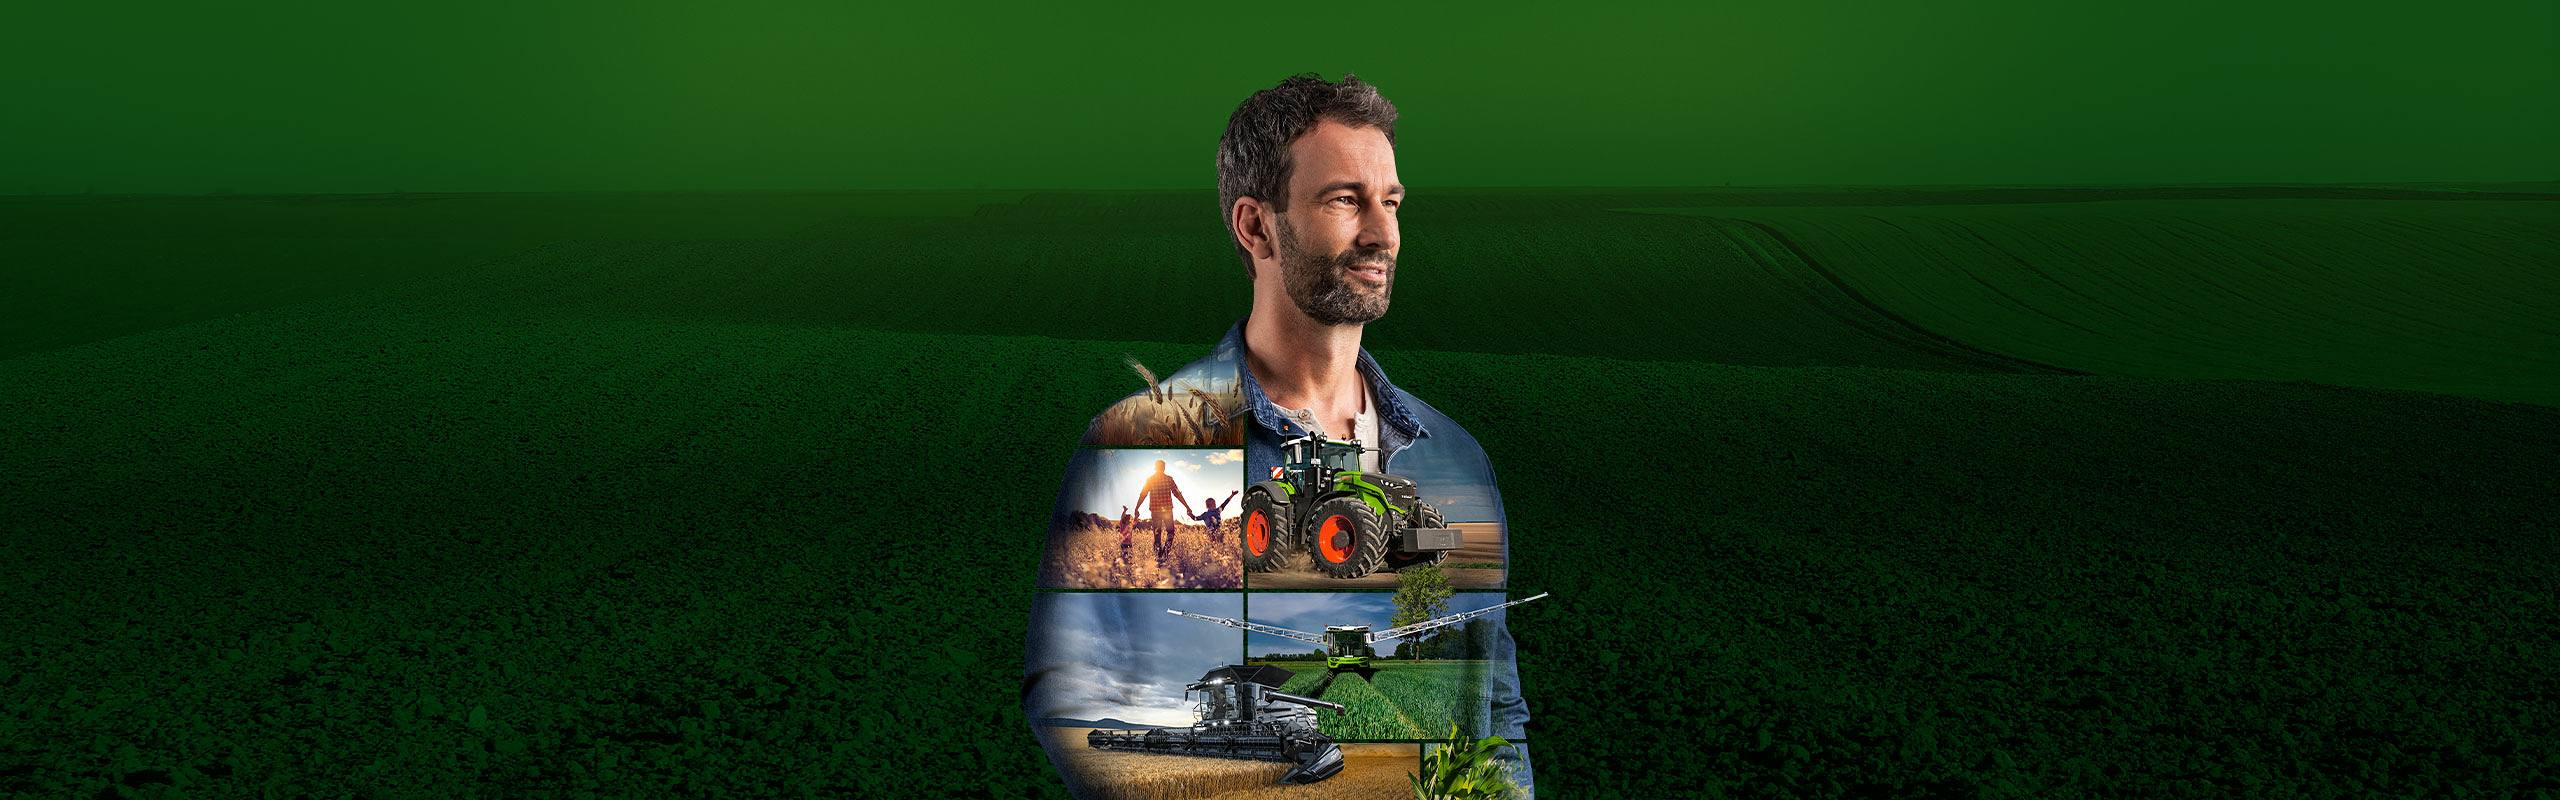 Фермер стоїть перед зеленим фоном і спрямовано дивиться в майбутнє. На його верхній частині зображена продукція компанії Fendt.